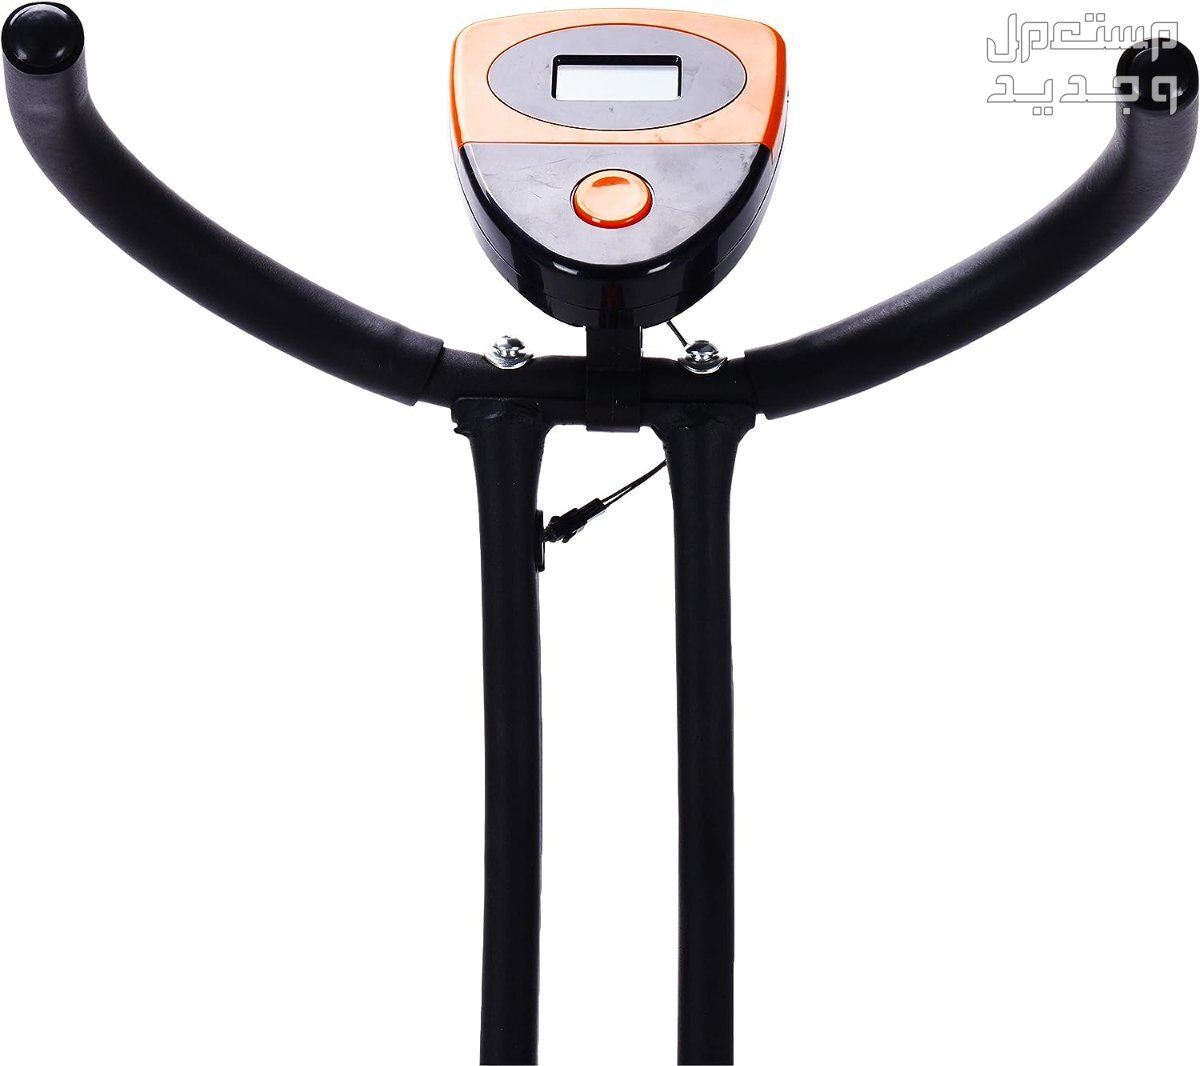 ارخص اجهزة رياضية مستعملة بالمواصفات والصور والاسعار في لبنان جهاز ‎دراجة كارديو ‎بودي بيلدر موديل ‎38-1112-Orange